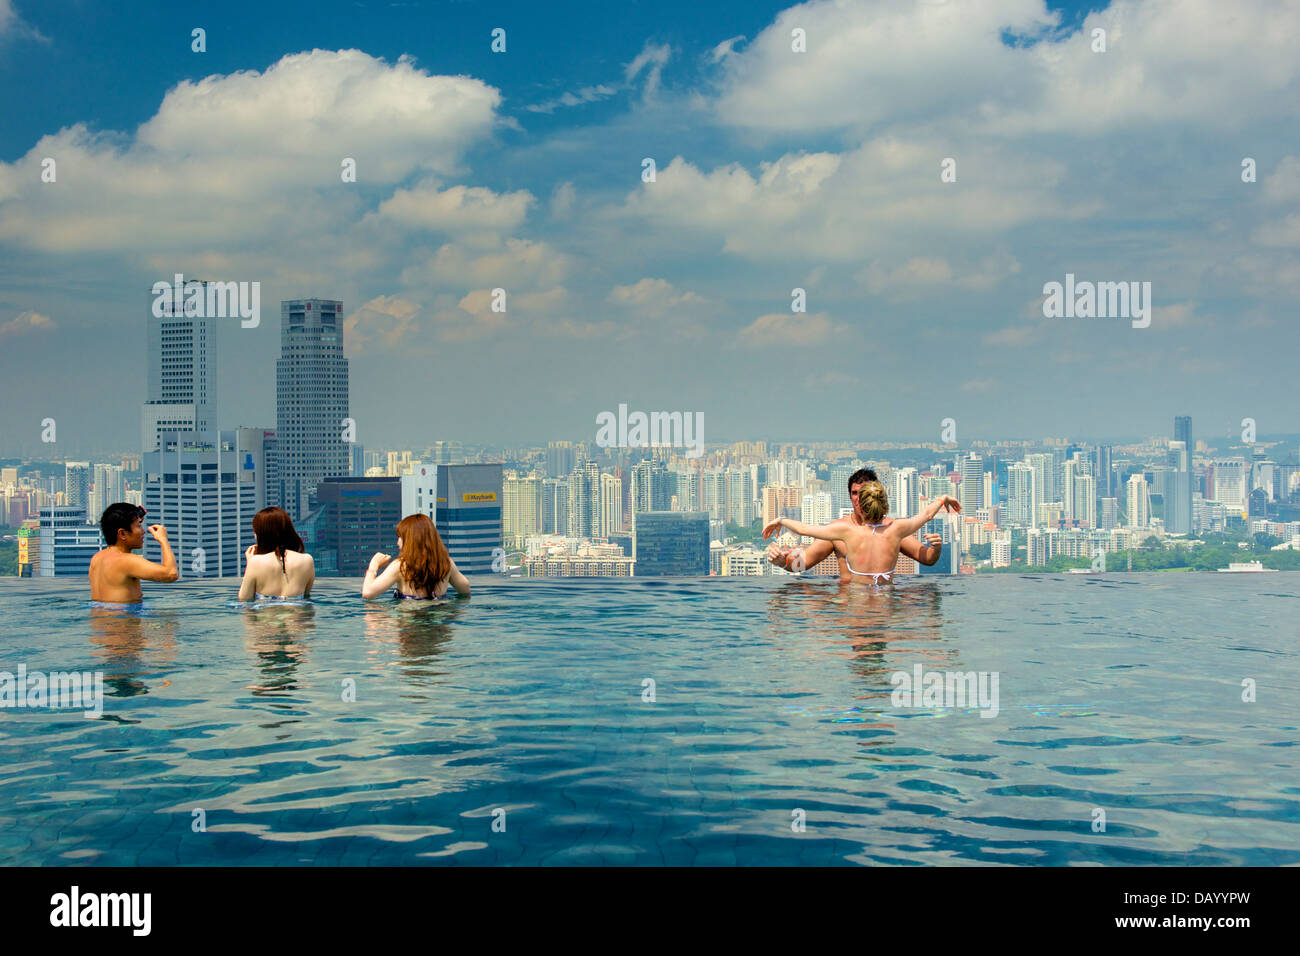 Gäste des Marina Bay Sands genießen ein Bad im Infinity-Pool des Hotels auf dem Dach und an die Sehenswürdigkeiten Singapurs Skyline Stockfoto